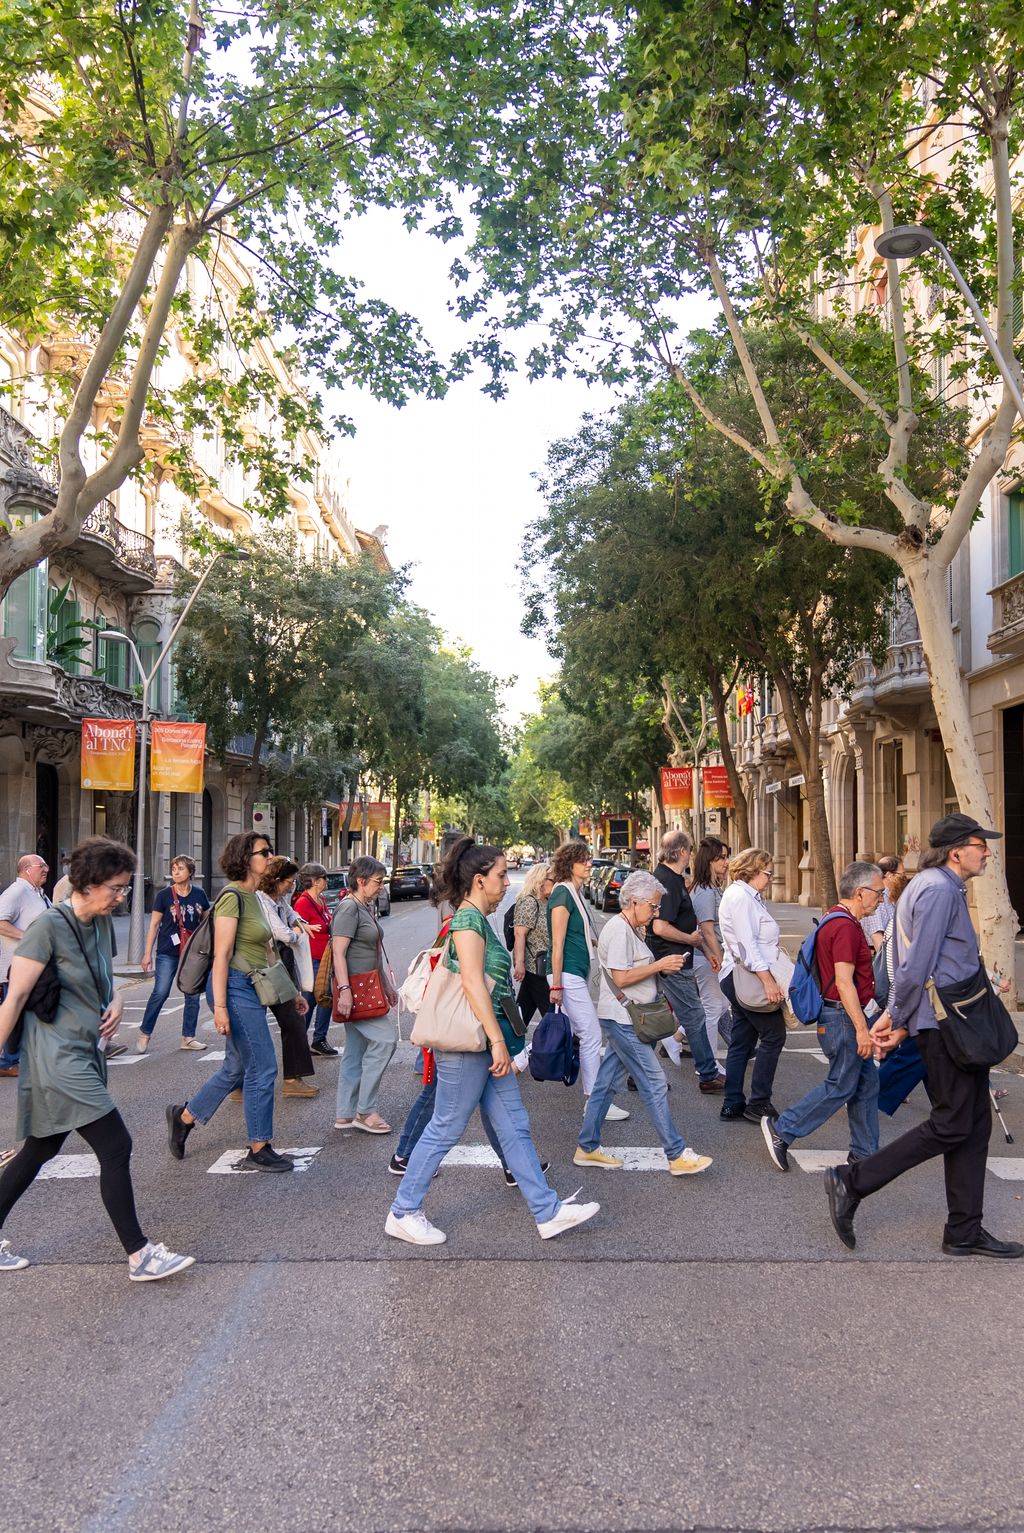 Diferents persones travessant un carrer durant l’itinerari per l’Eixample basat en el llibre ‘La Barcelona esgrafiada’.